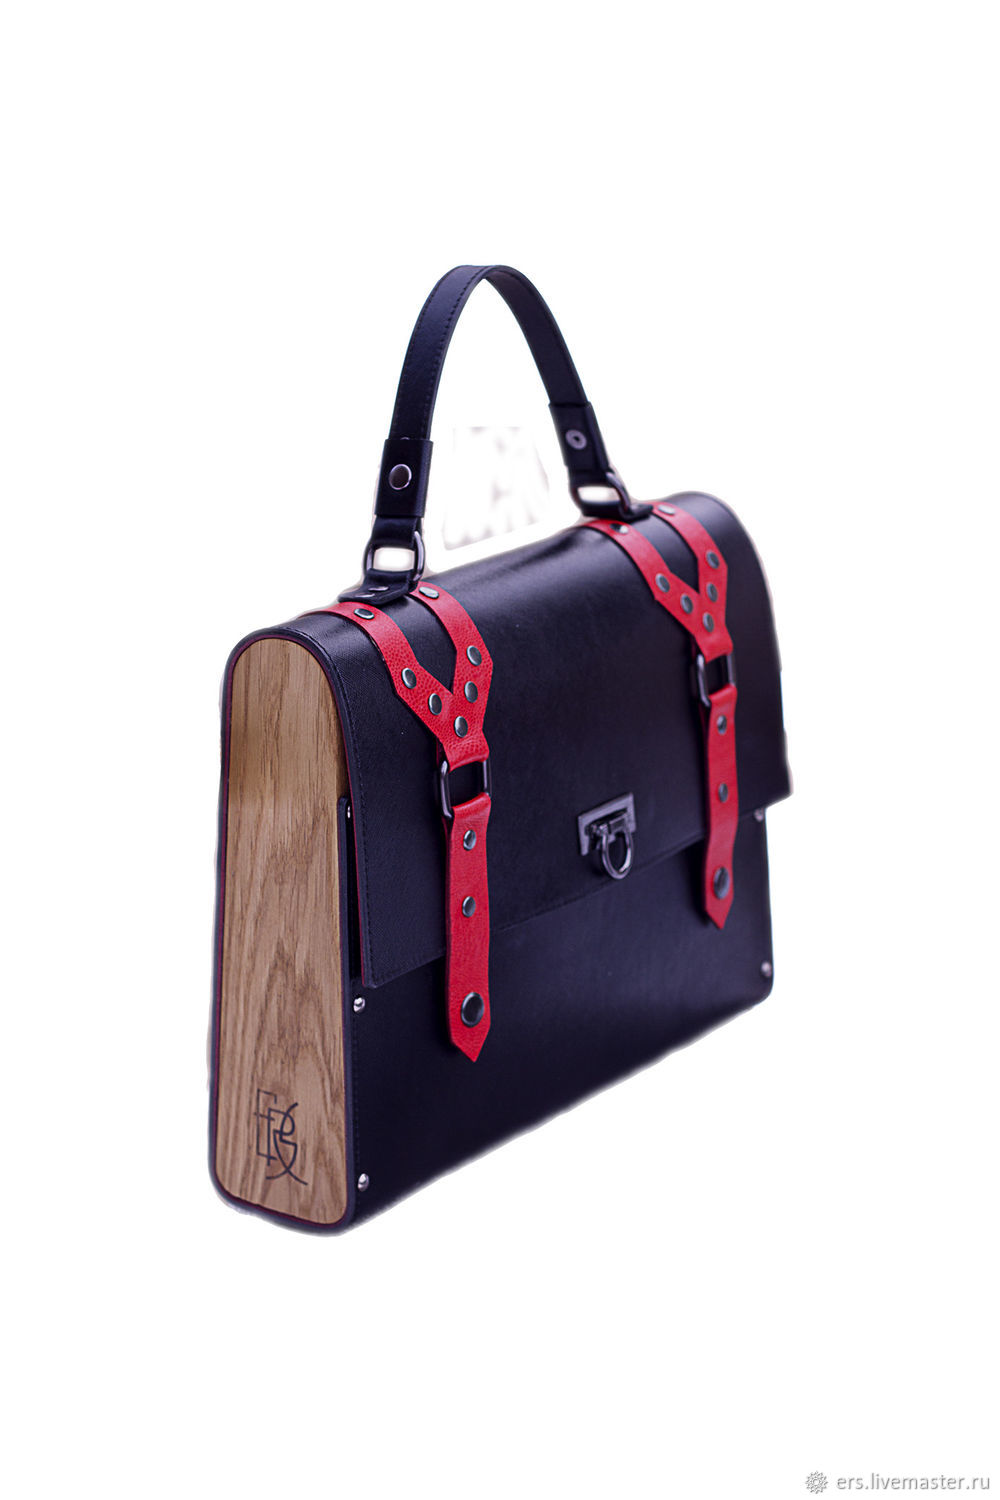  Кожаный портфель рюкзак черно-красный, Портфель, Тольятти,  Фото №1